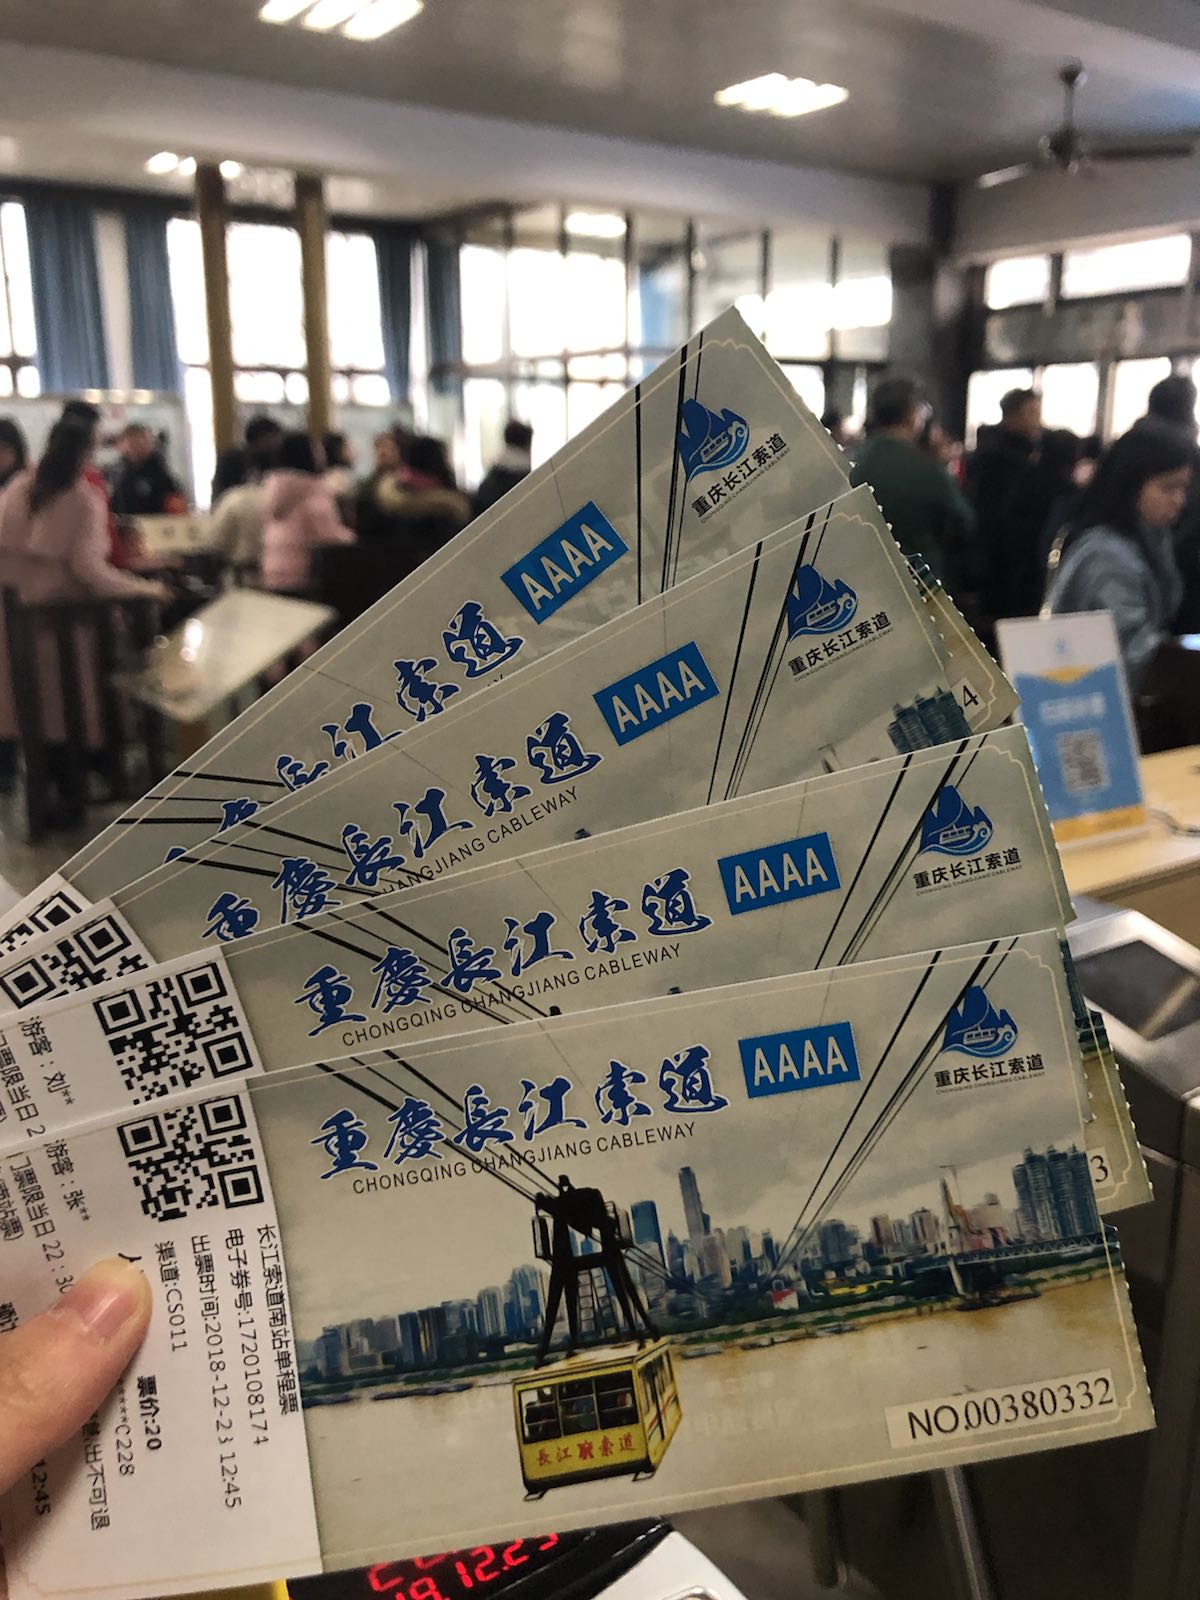 长江索道可以买往返票40，或者单程票20元。我们是走完山城步道坐轻轨到